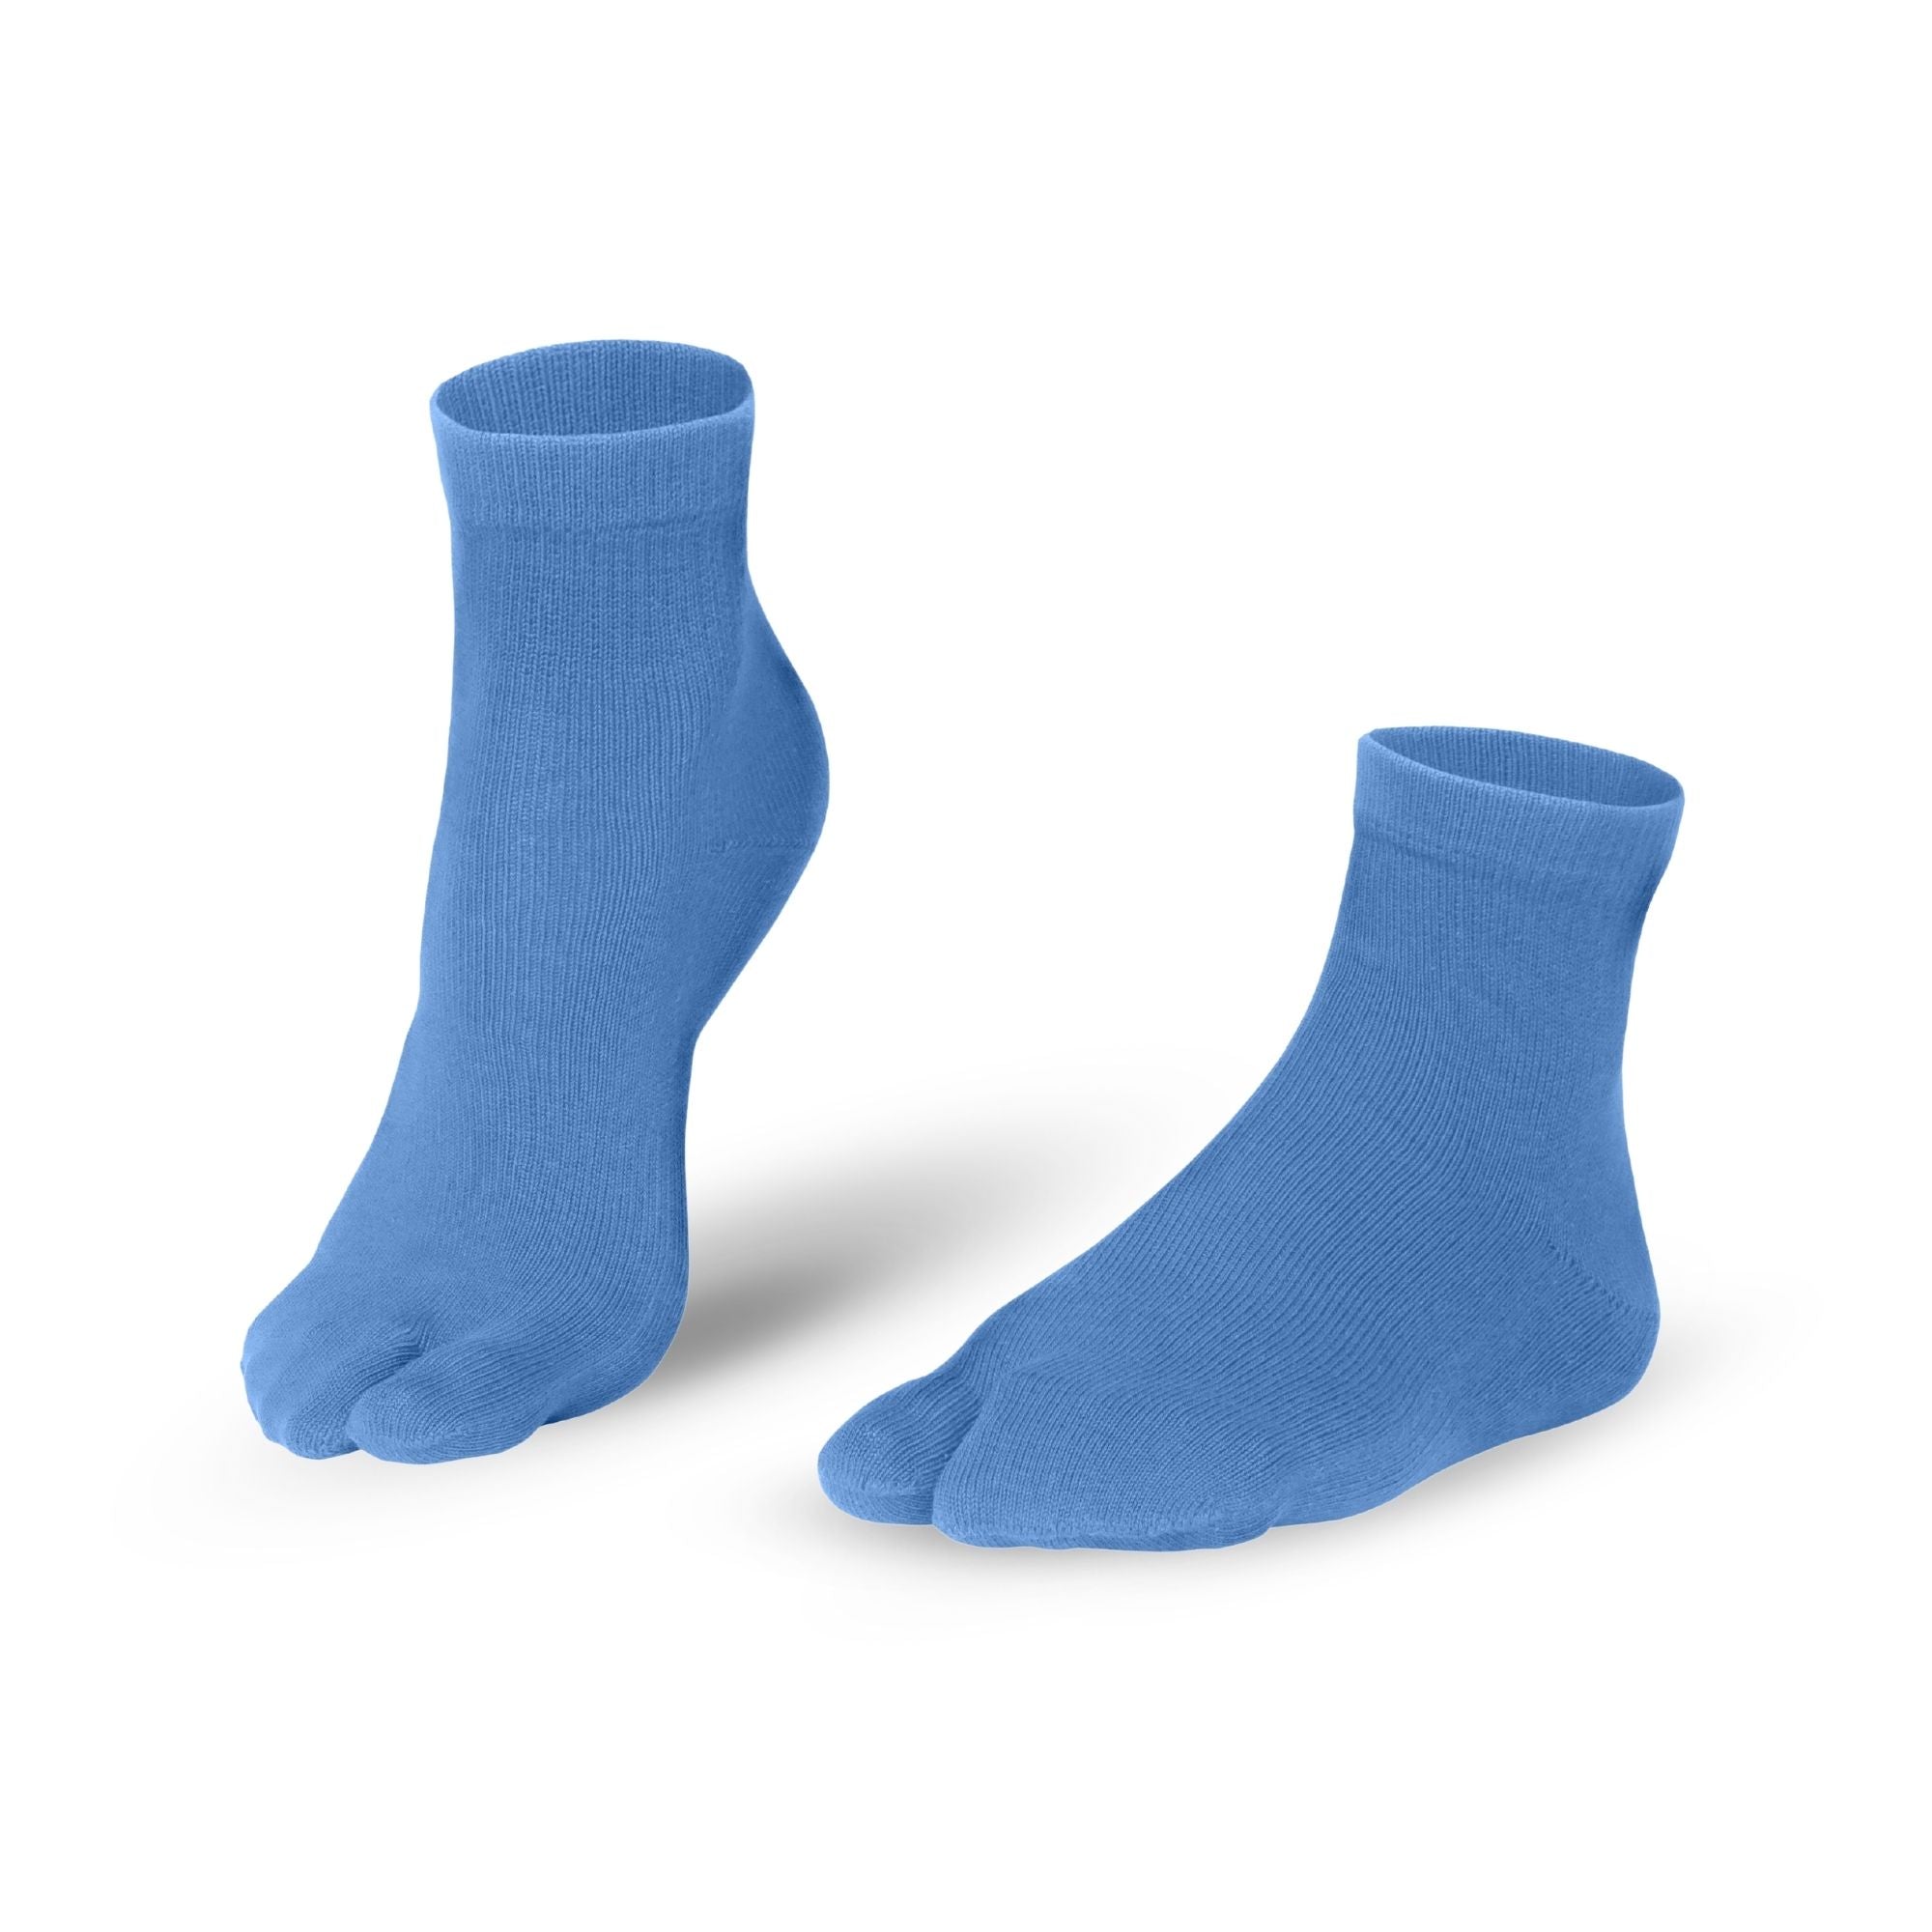 Knitido Calcetines Tabi Traditionals cortos de algodón en azul claro